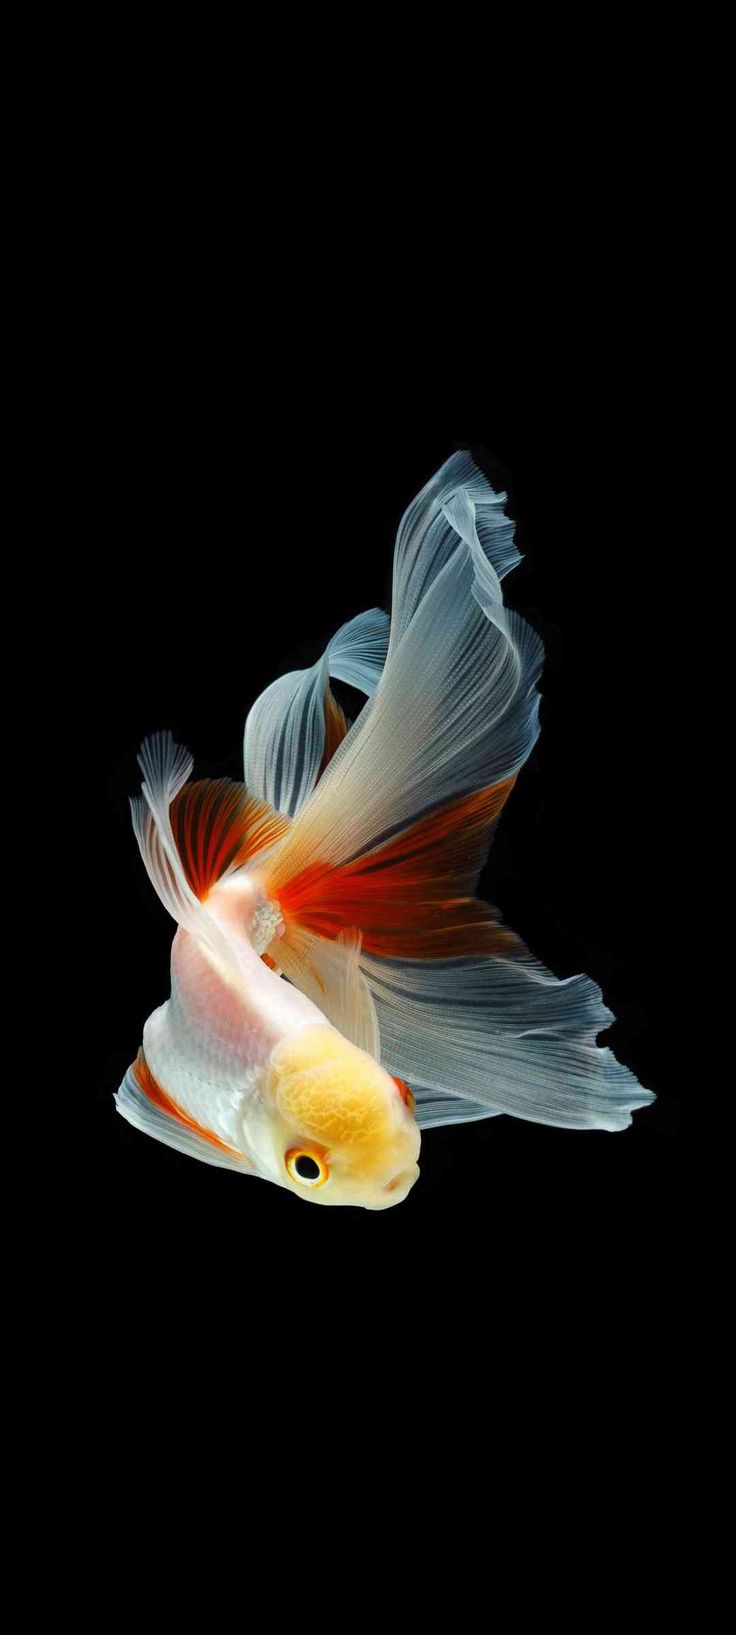 Aquarium And Fish iPhone Wallpaper | iDrop News